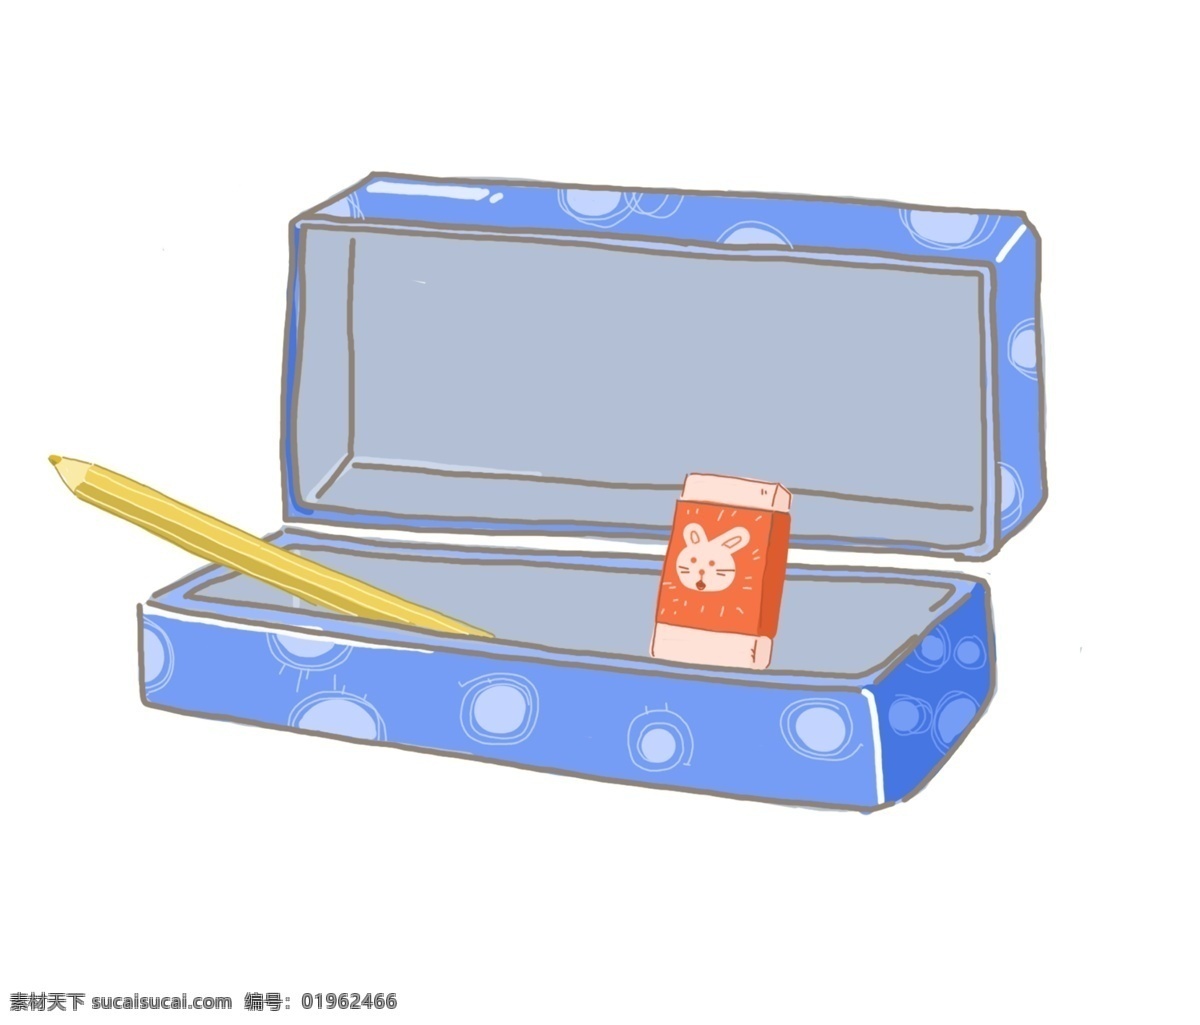 蓝色 笔盒 装饰 插画 蓝色的笔盒 漂亮的笔盒 创意笔盒 立体笔盒 卡通笔盒 精美笔盒 办公笔盒